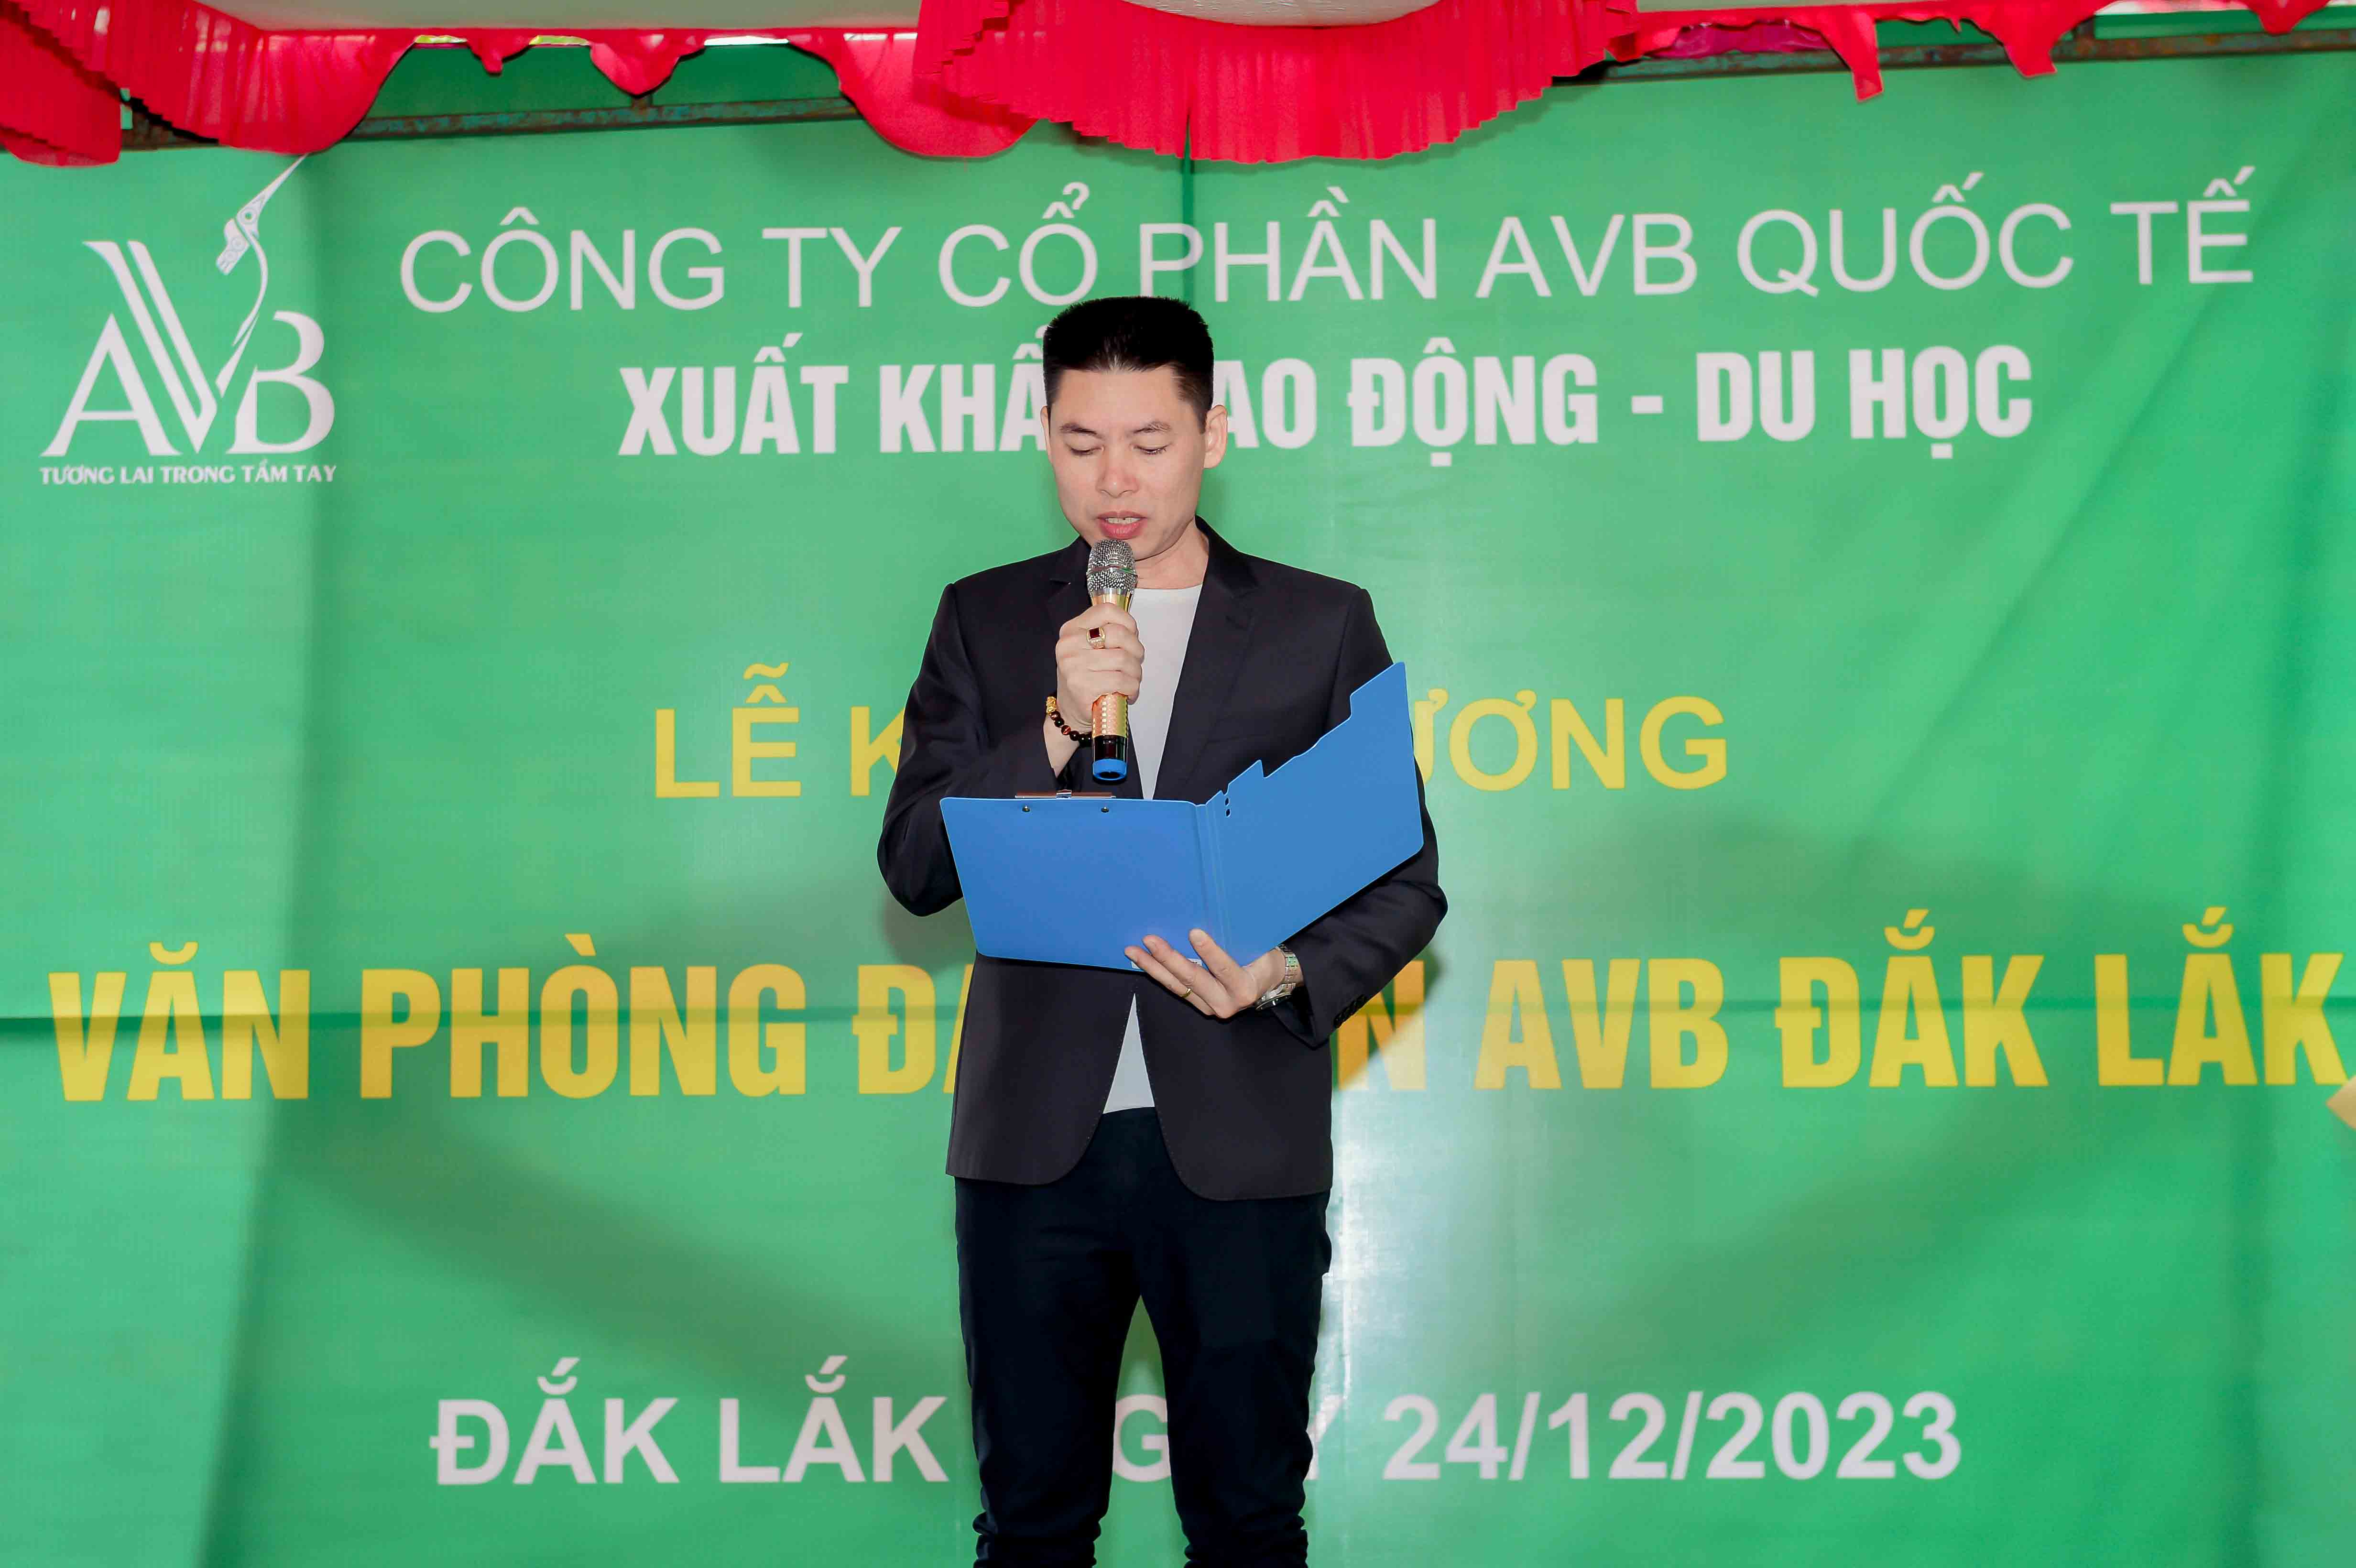 Chủ tịch HĐQT ông Nguyễn Hồng Quang phát biểu tại buổi Lễ